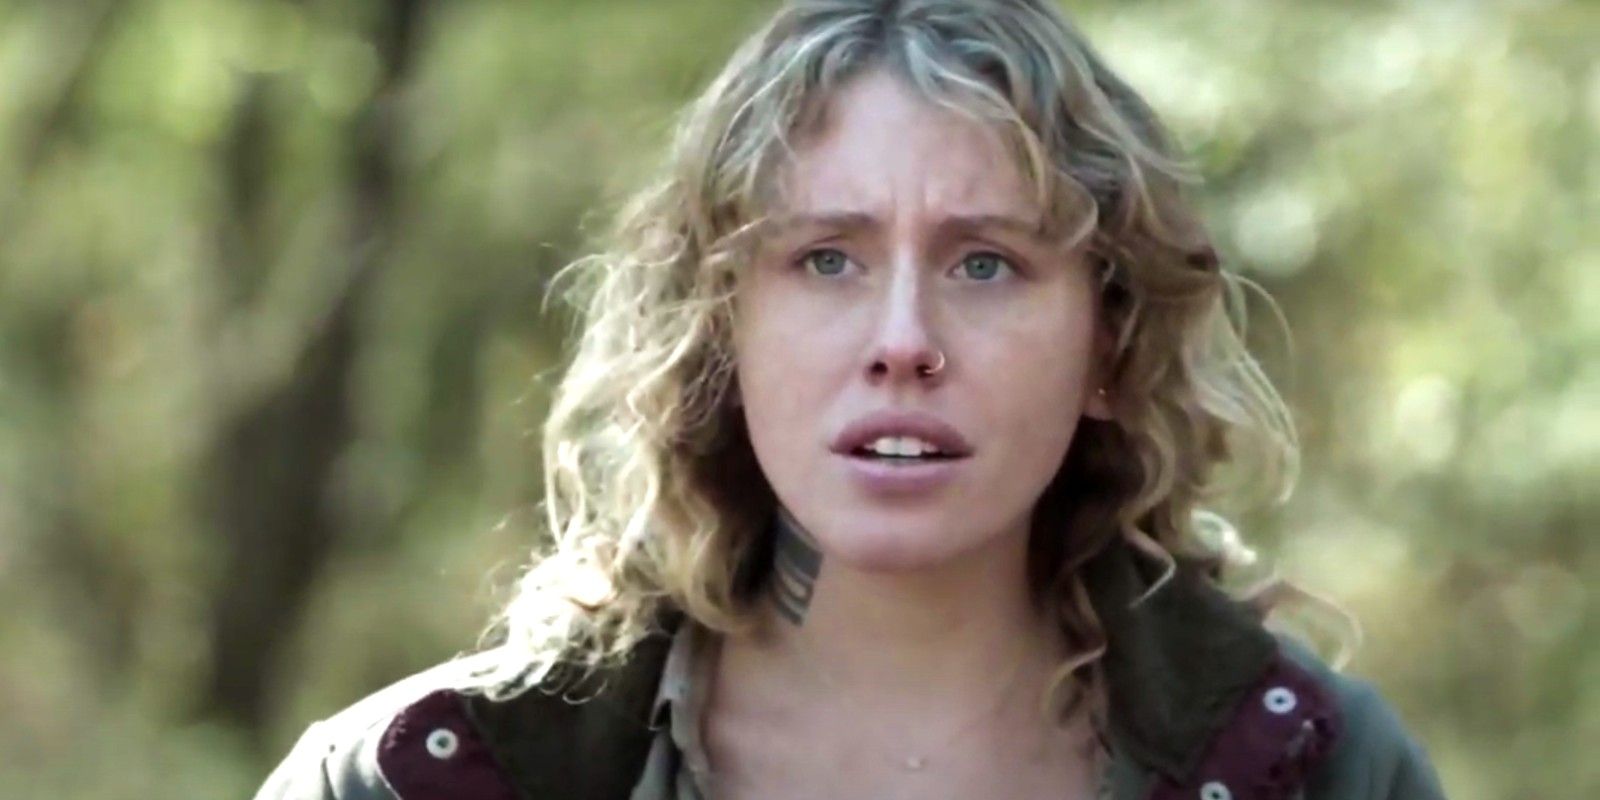 Lindsley Register as Laura in The Walking Dead season 10